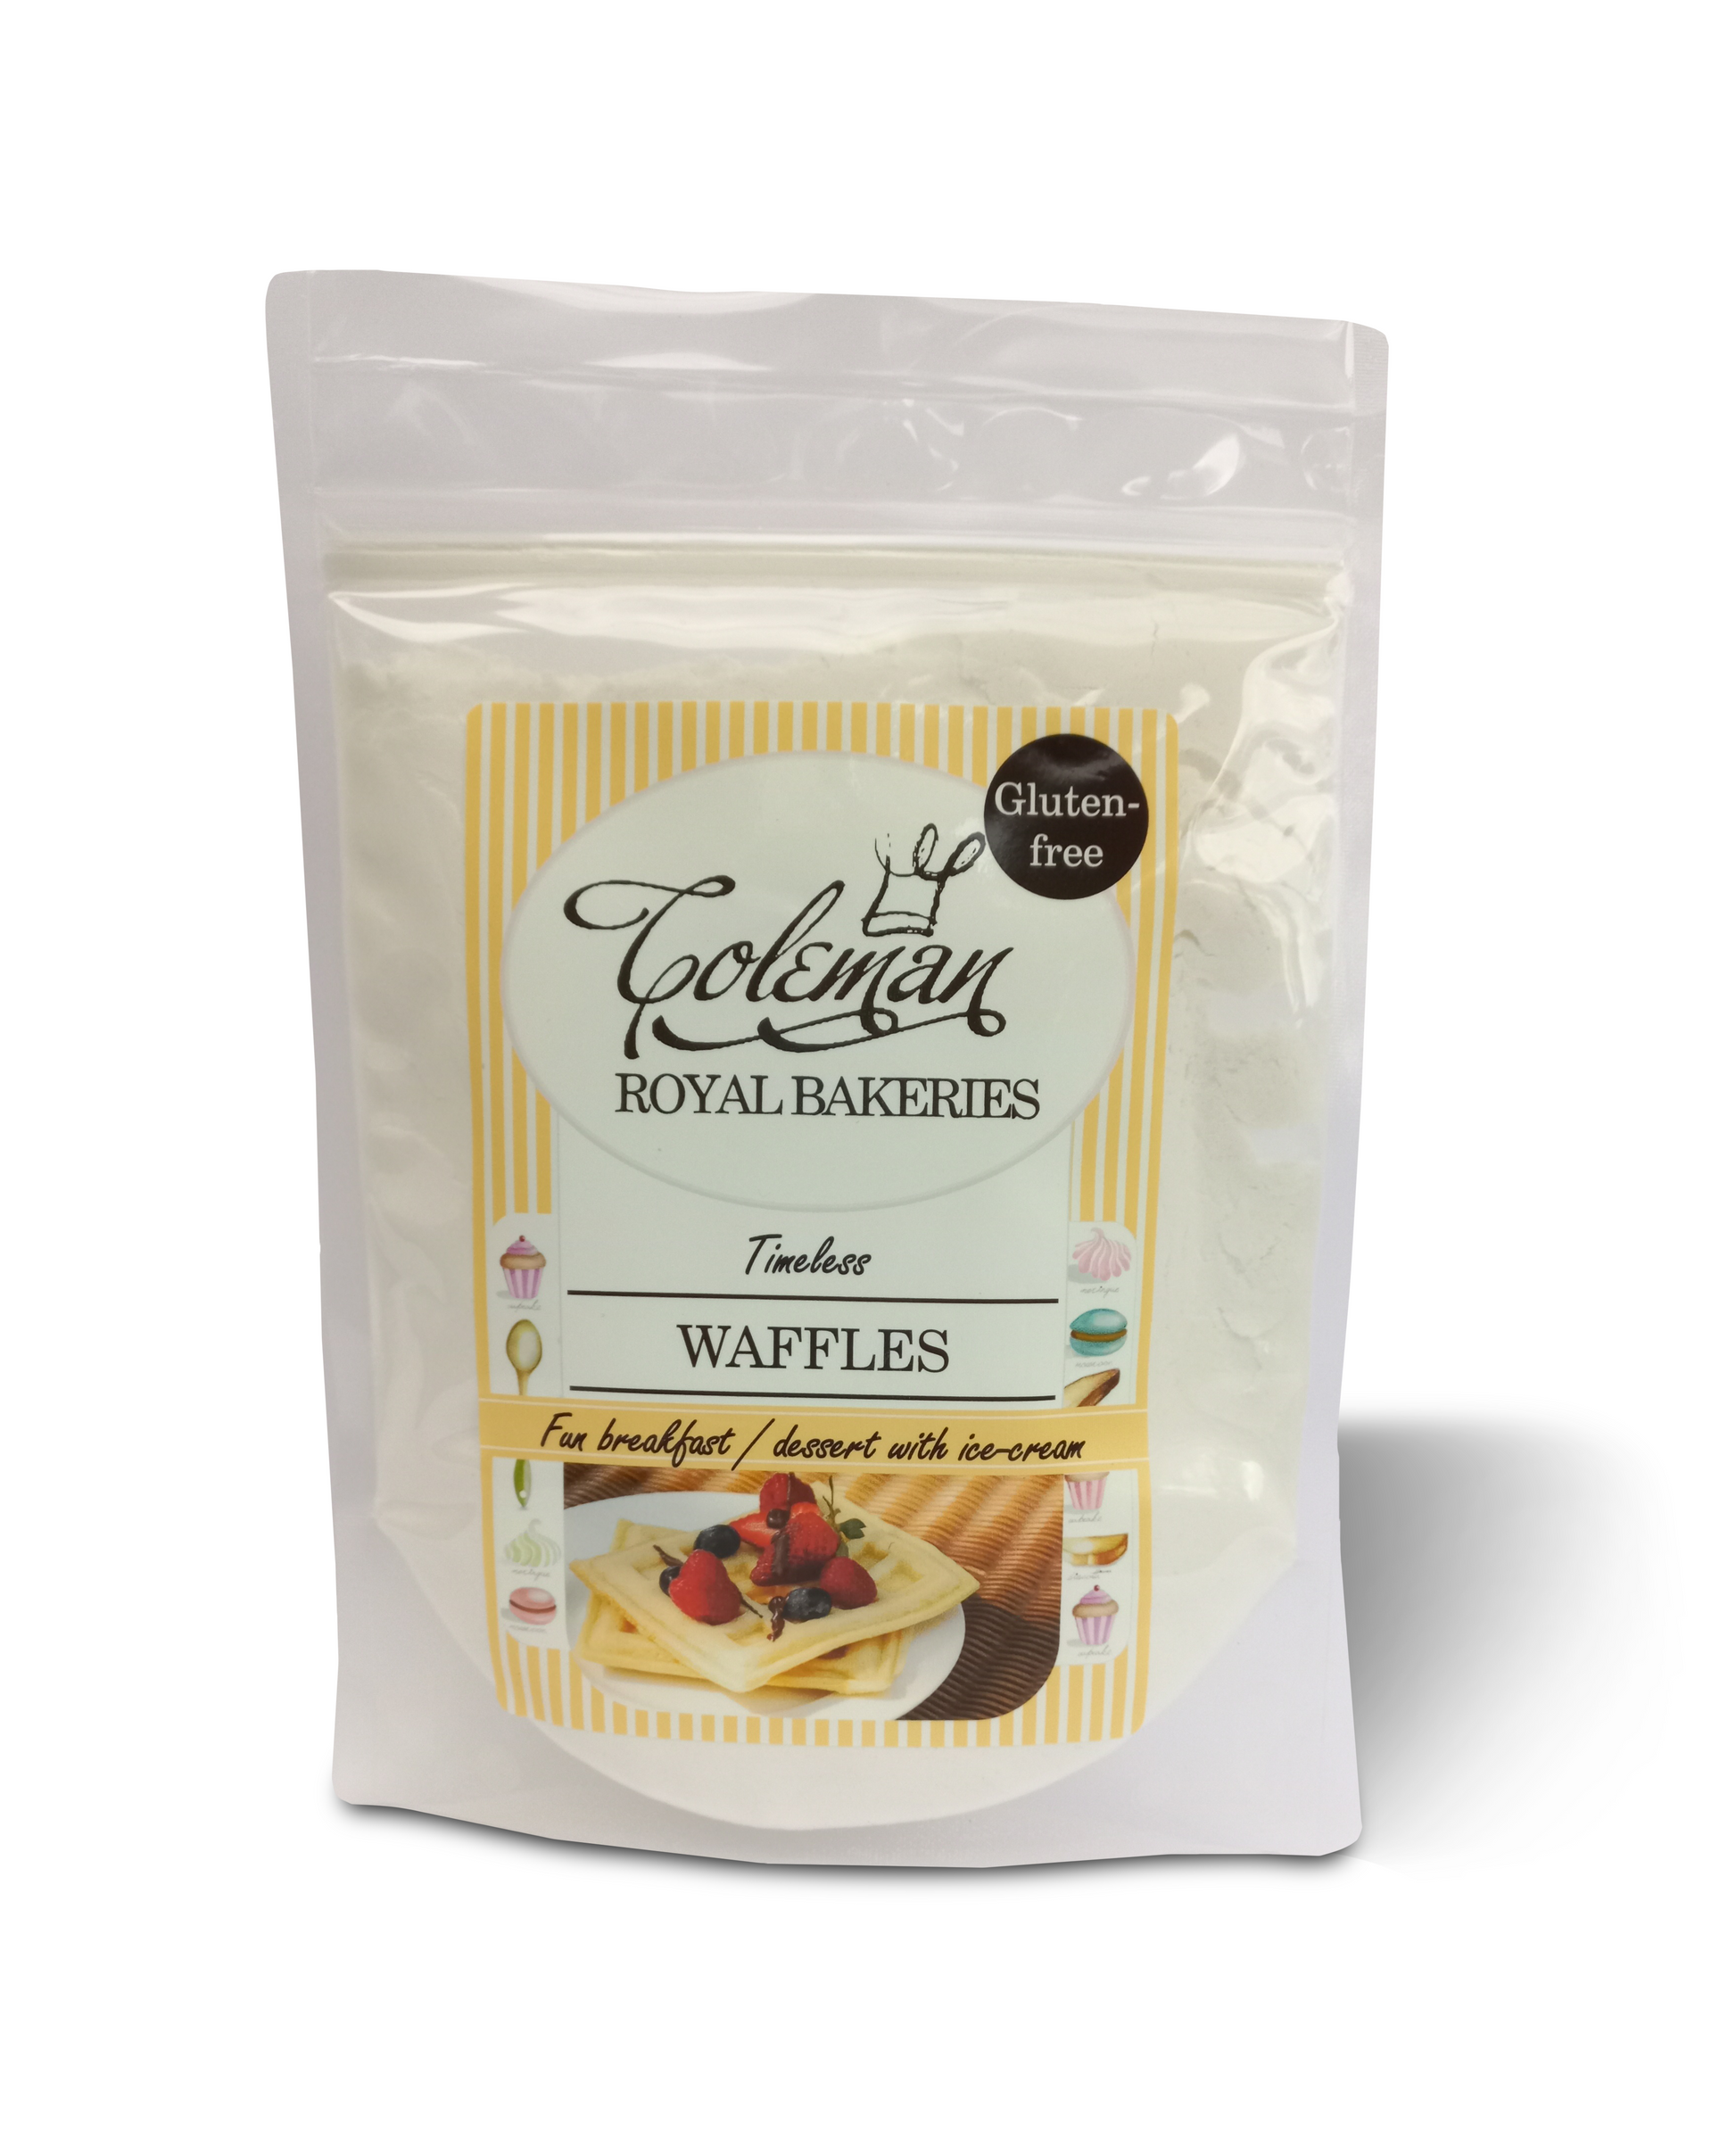 oleman Royal Bakeries: Timeless Waffles, Certified gluten-free premix.